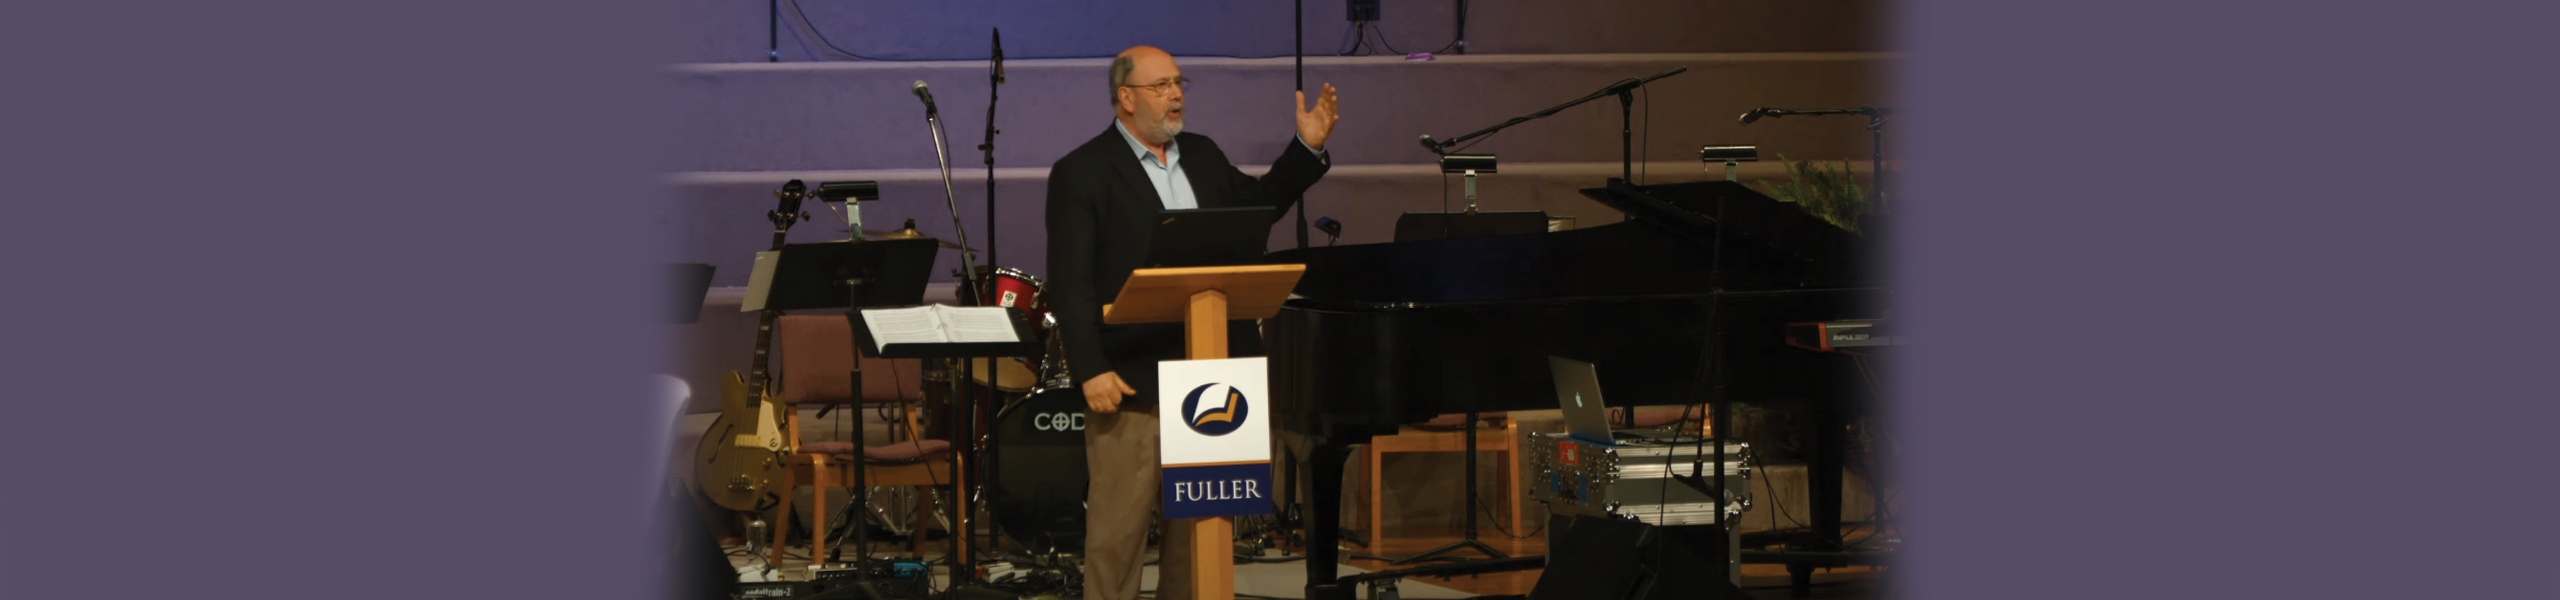 N. T. Wright 2014 Fuller Forum | Fuller Theological Seminary